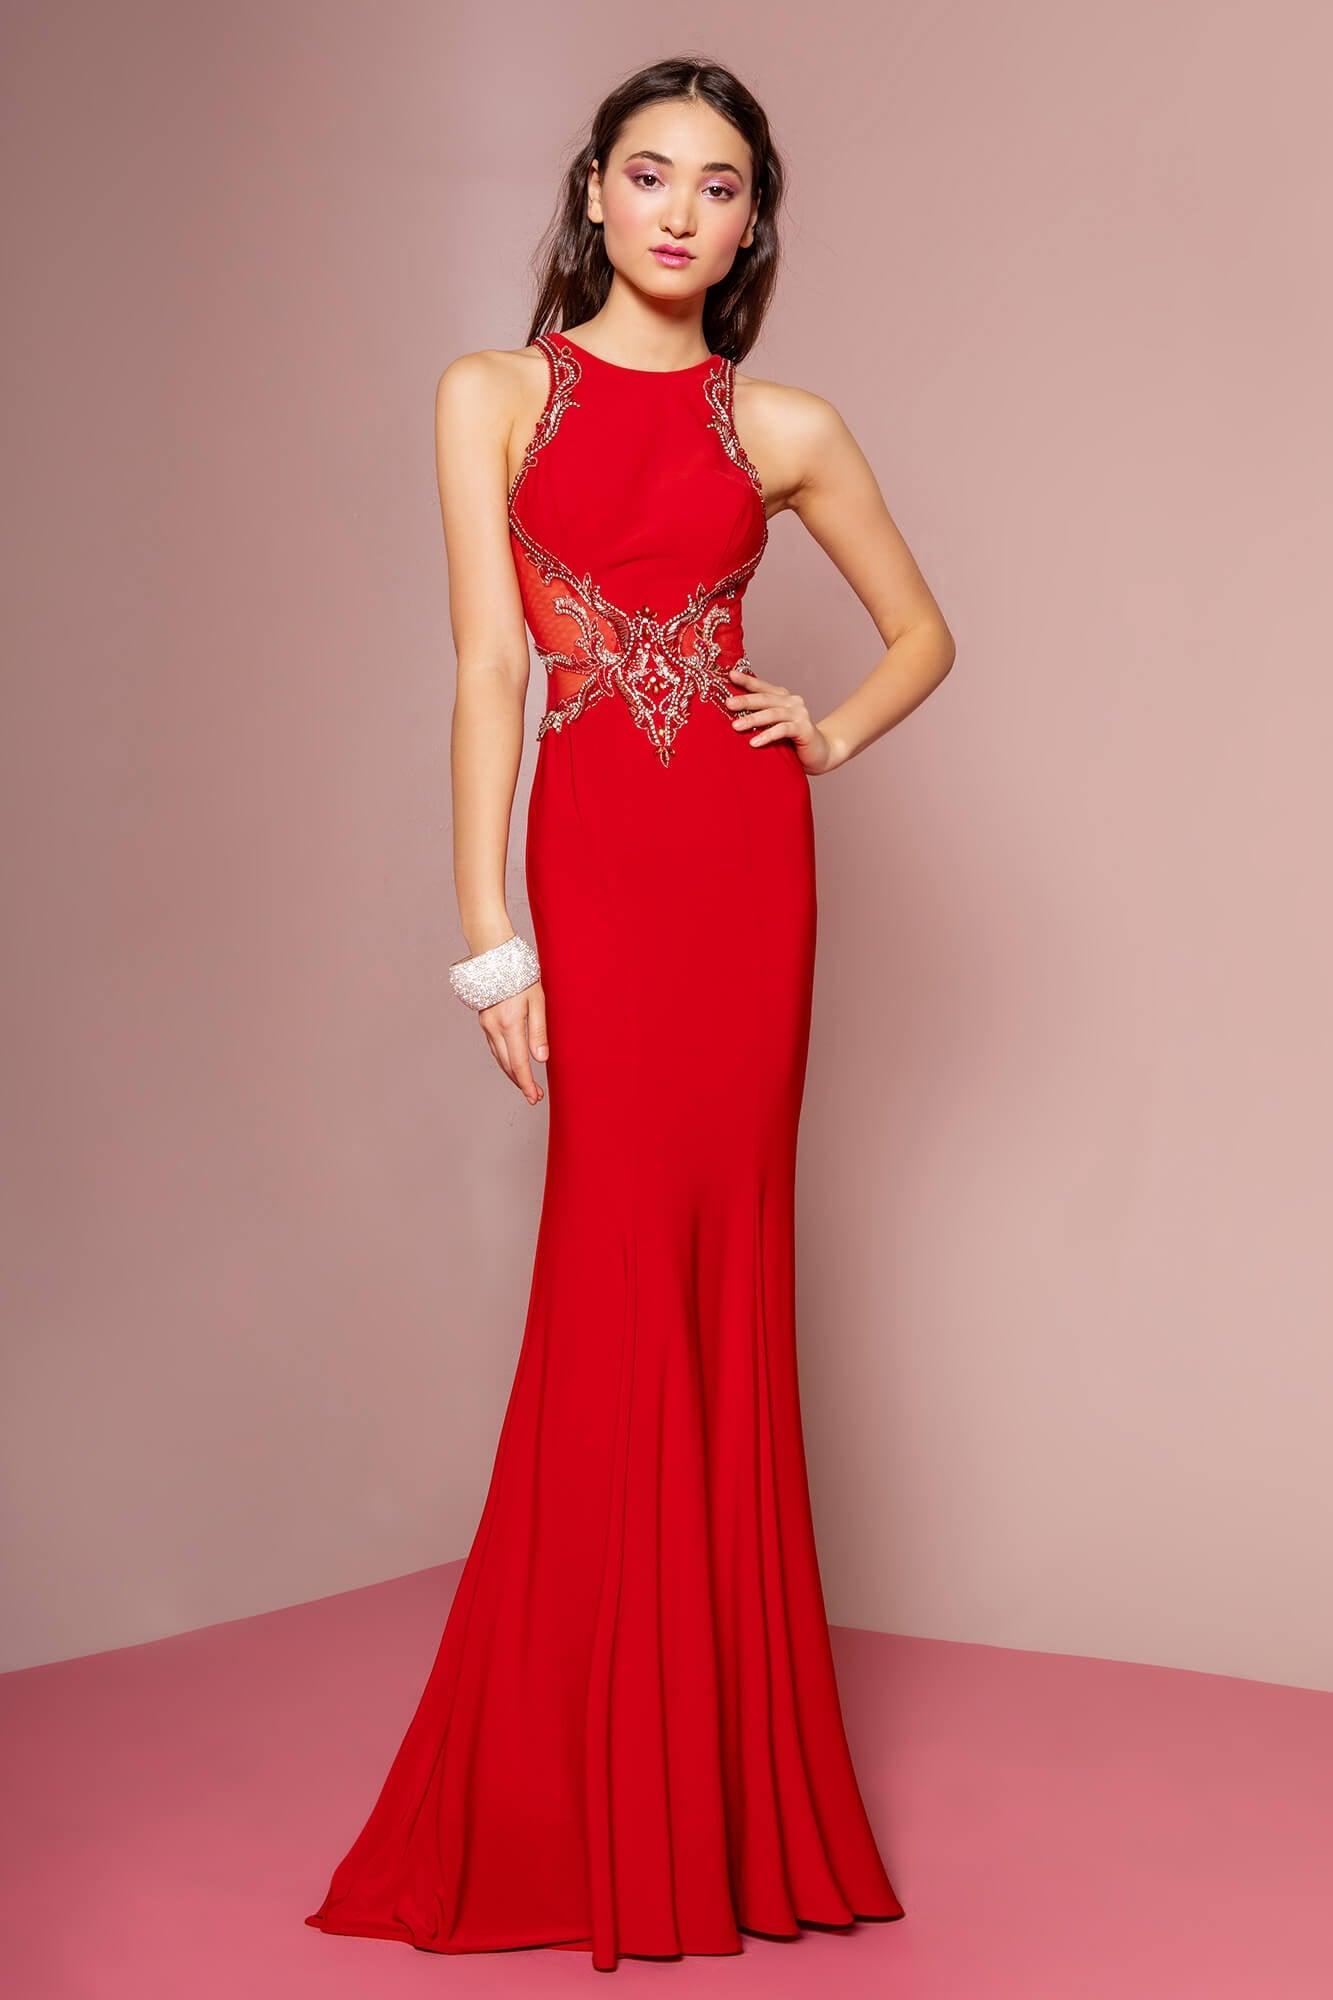 Prom Long Dress Evening Gown Formal - The Dress Outlet Elizabeth K